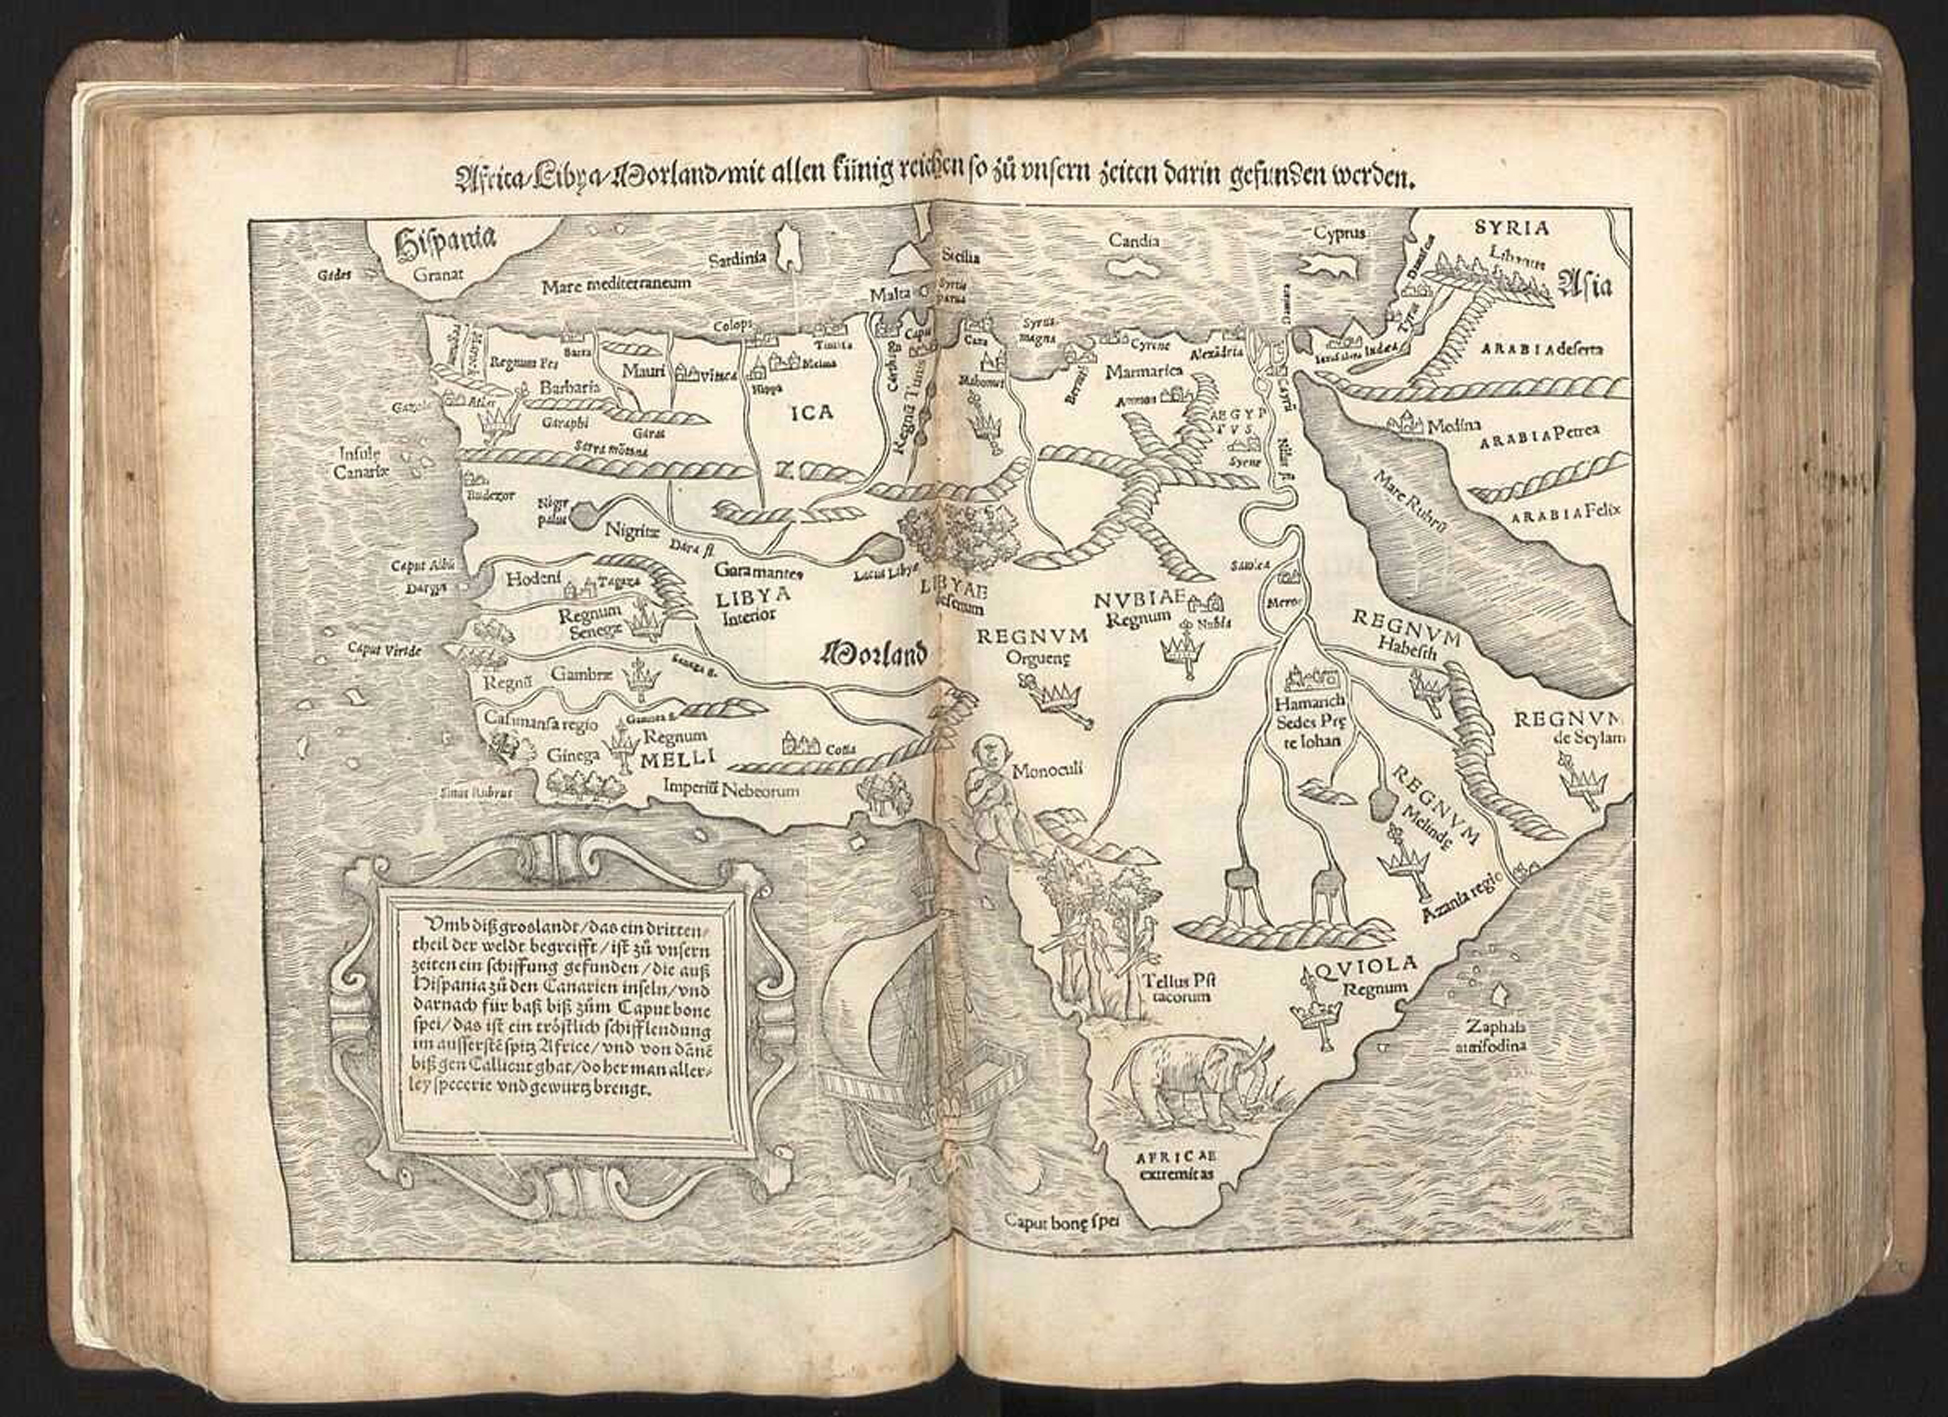 APERTURA Antica mappa dell'Africa